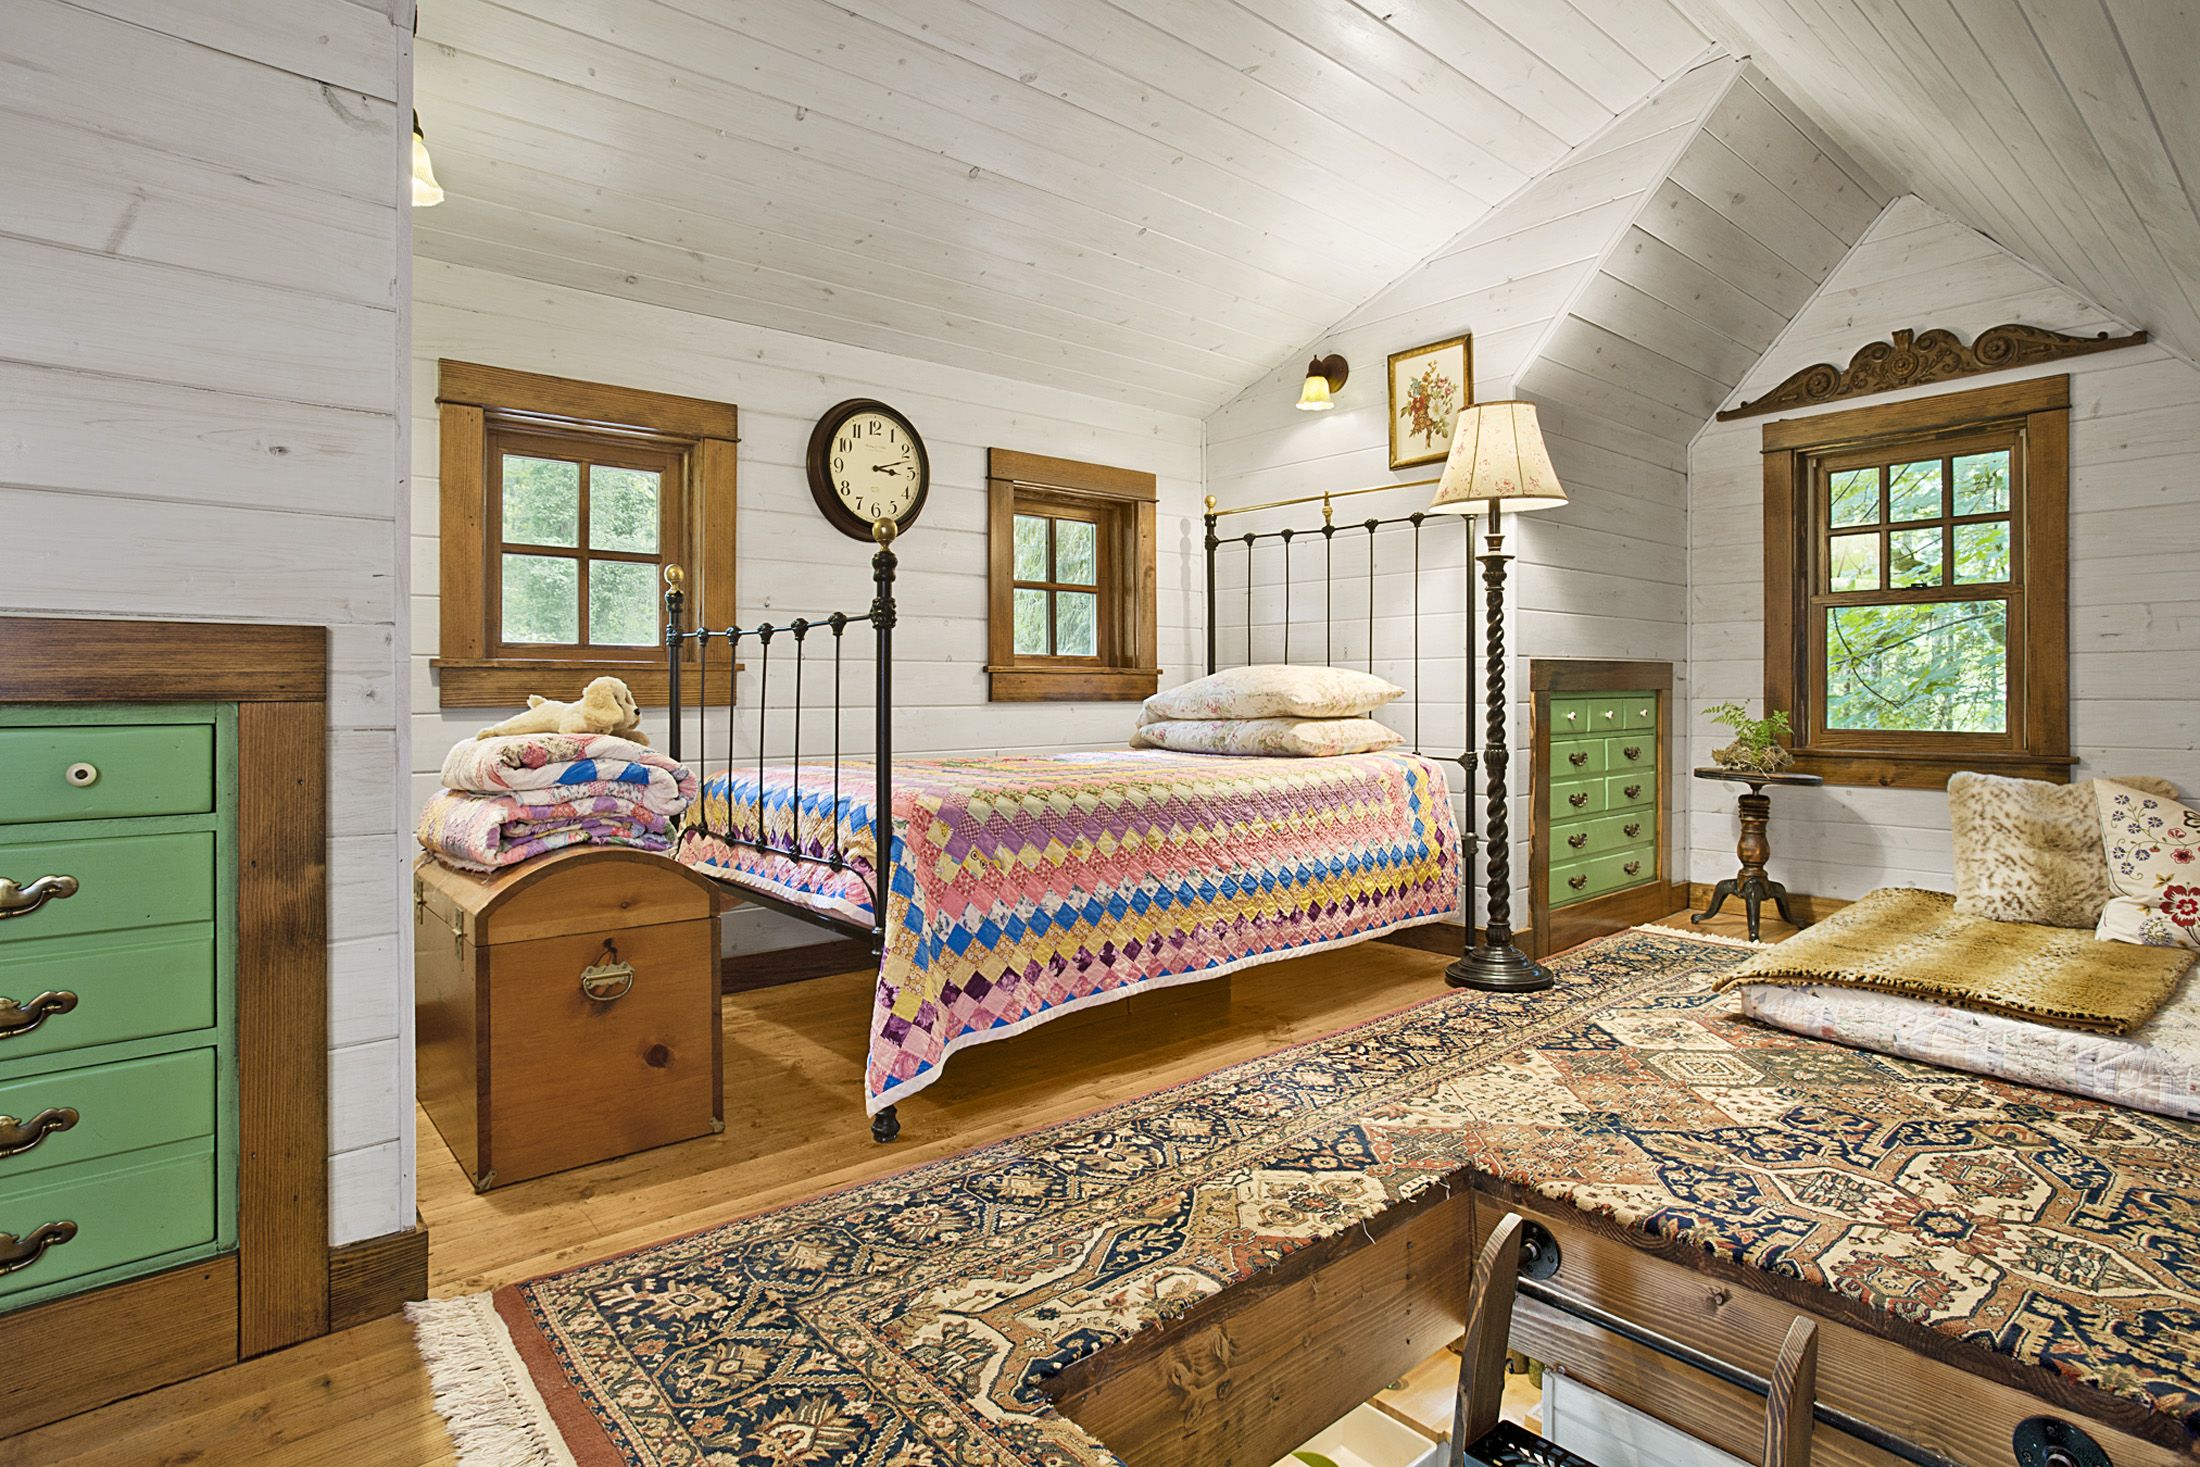 https://hips.hearstapps.com/hmg-prod/images/quaint-little-cabin-bedroom-1118-1546896507.jpg